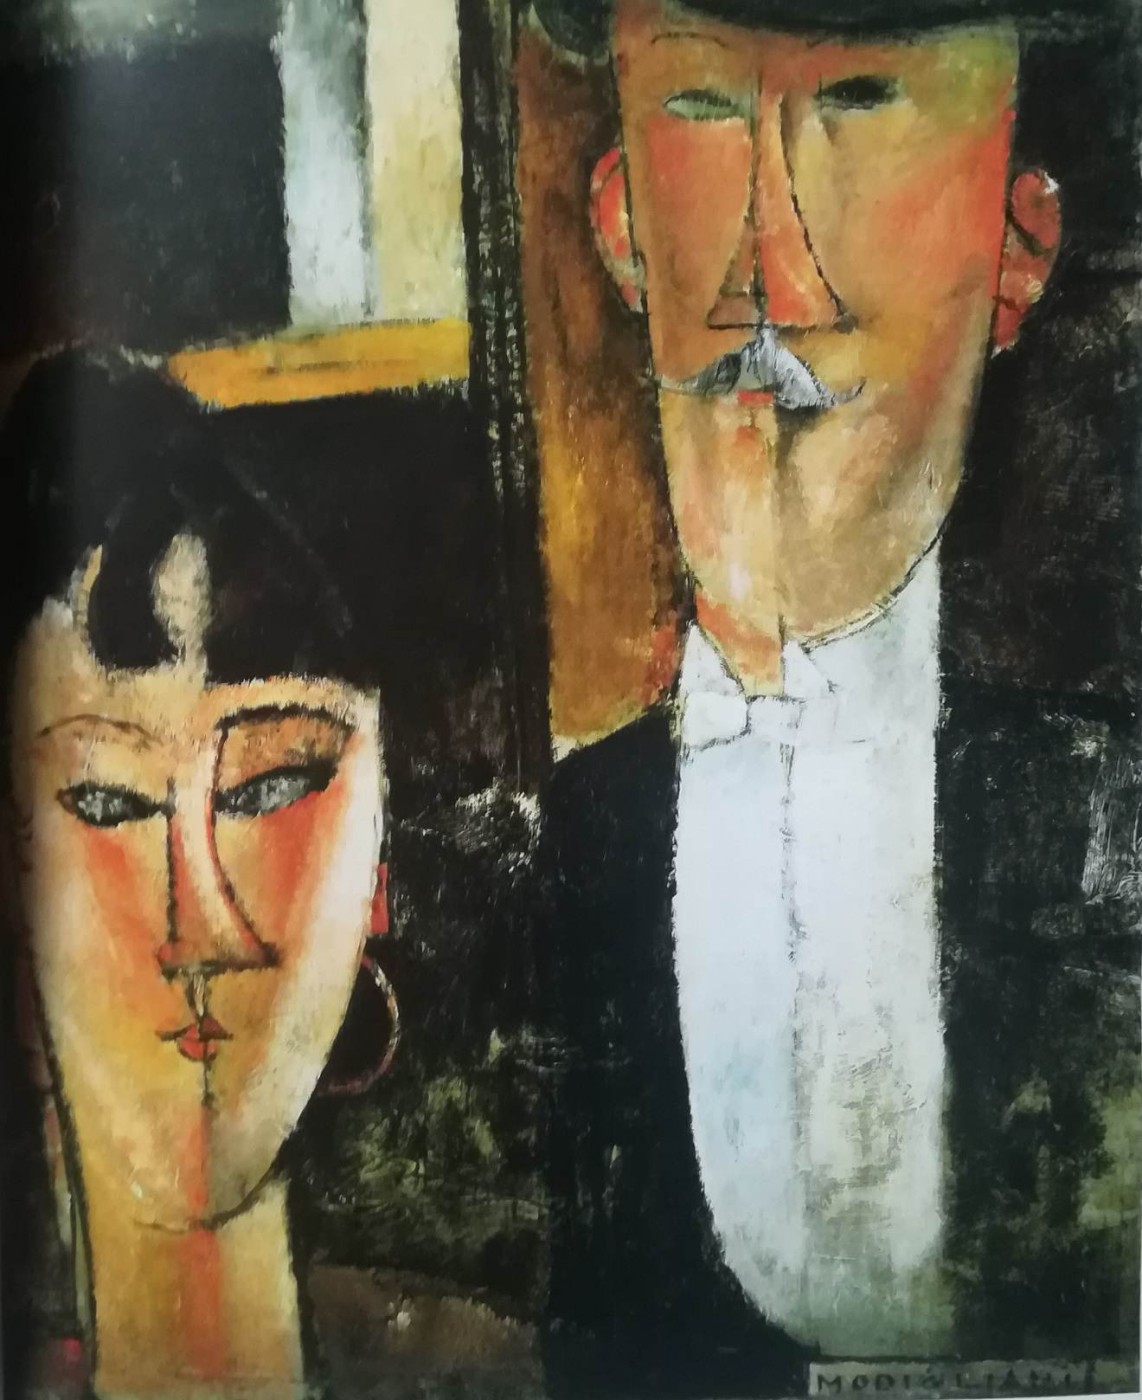 Bride and Groom (o la coppia) - Modigliani 1915-16